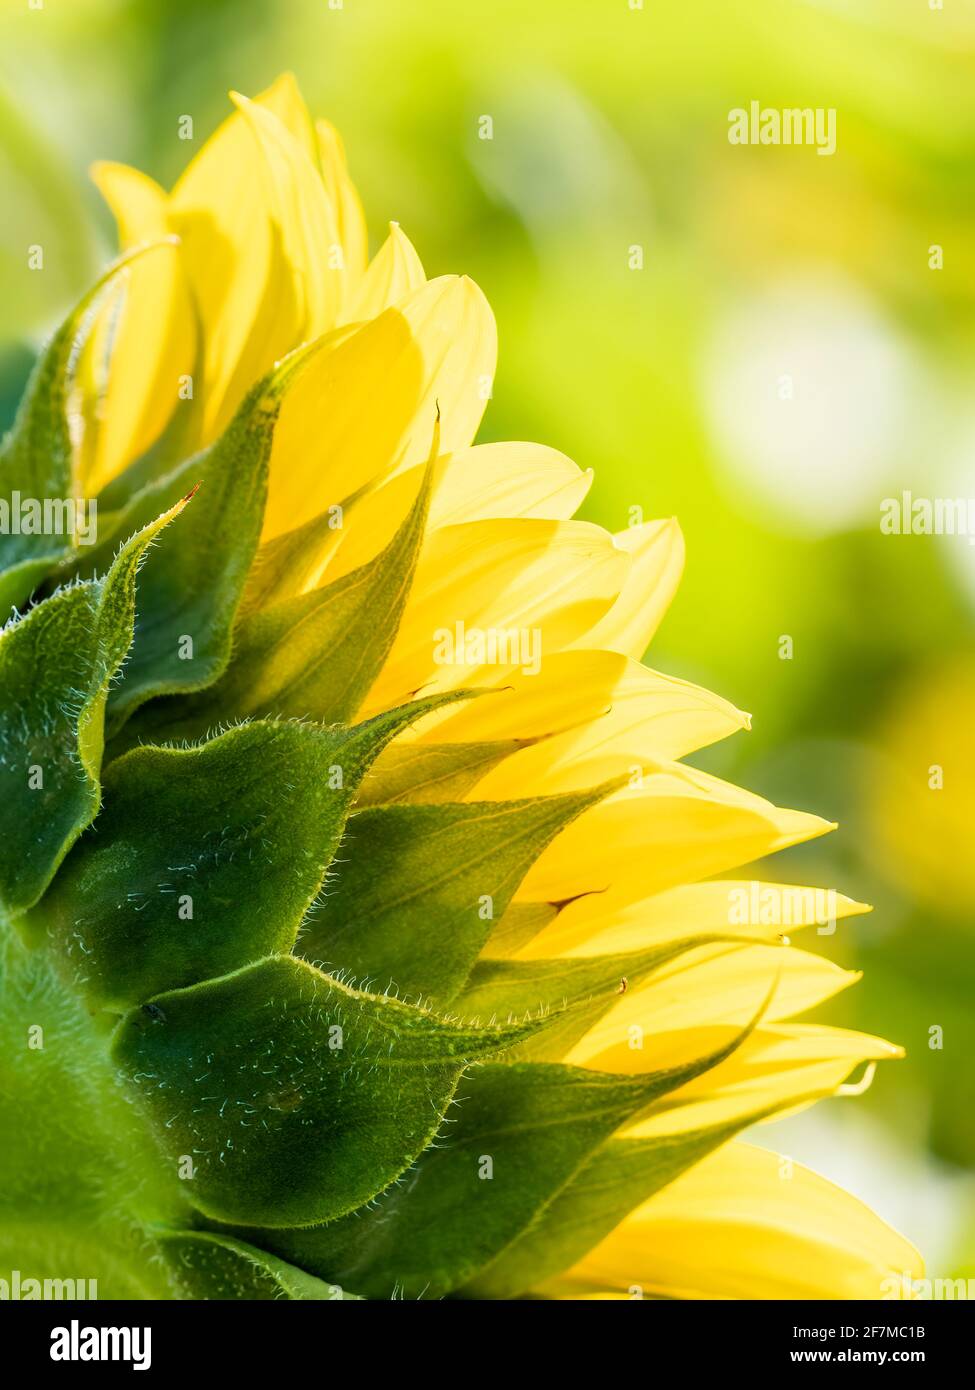 Hinterleuchtete Sonnenblume Aganist ein weicher grüner Hintergrund Stockfoto